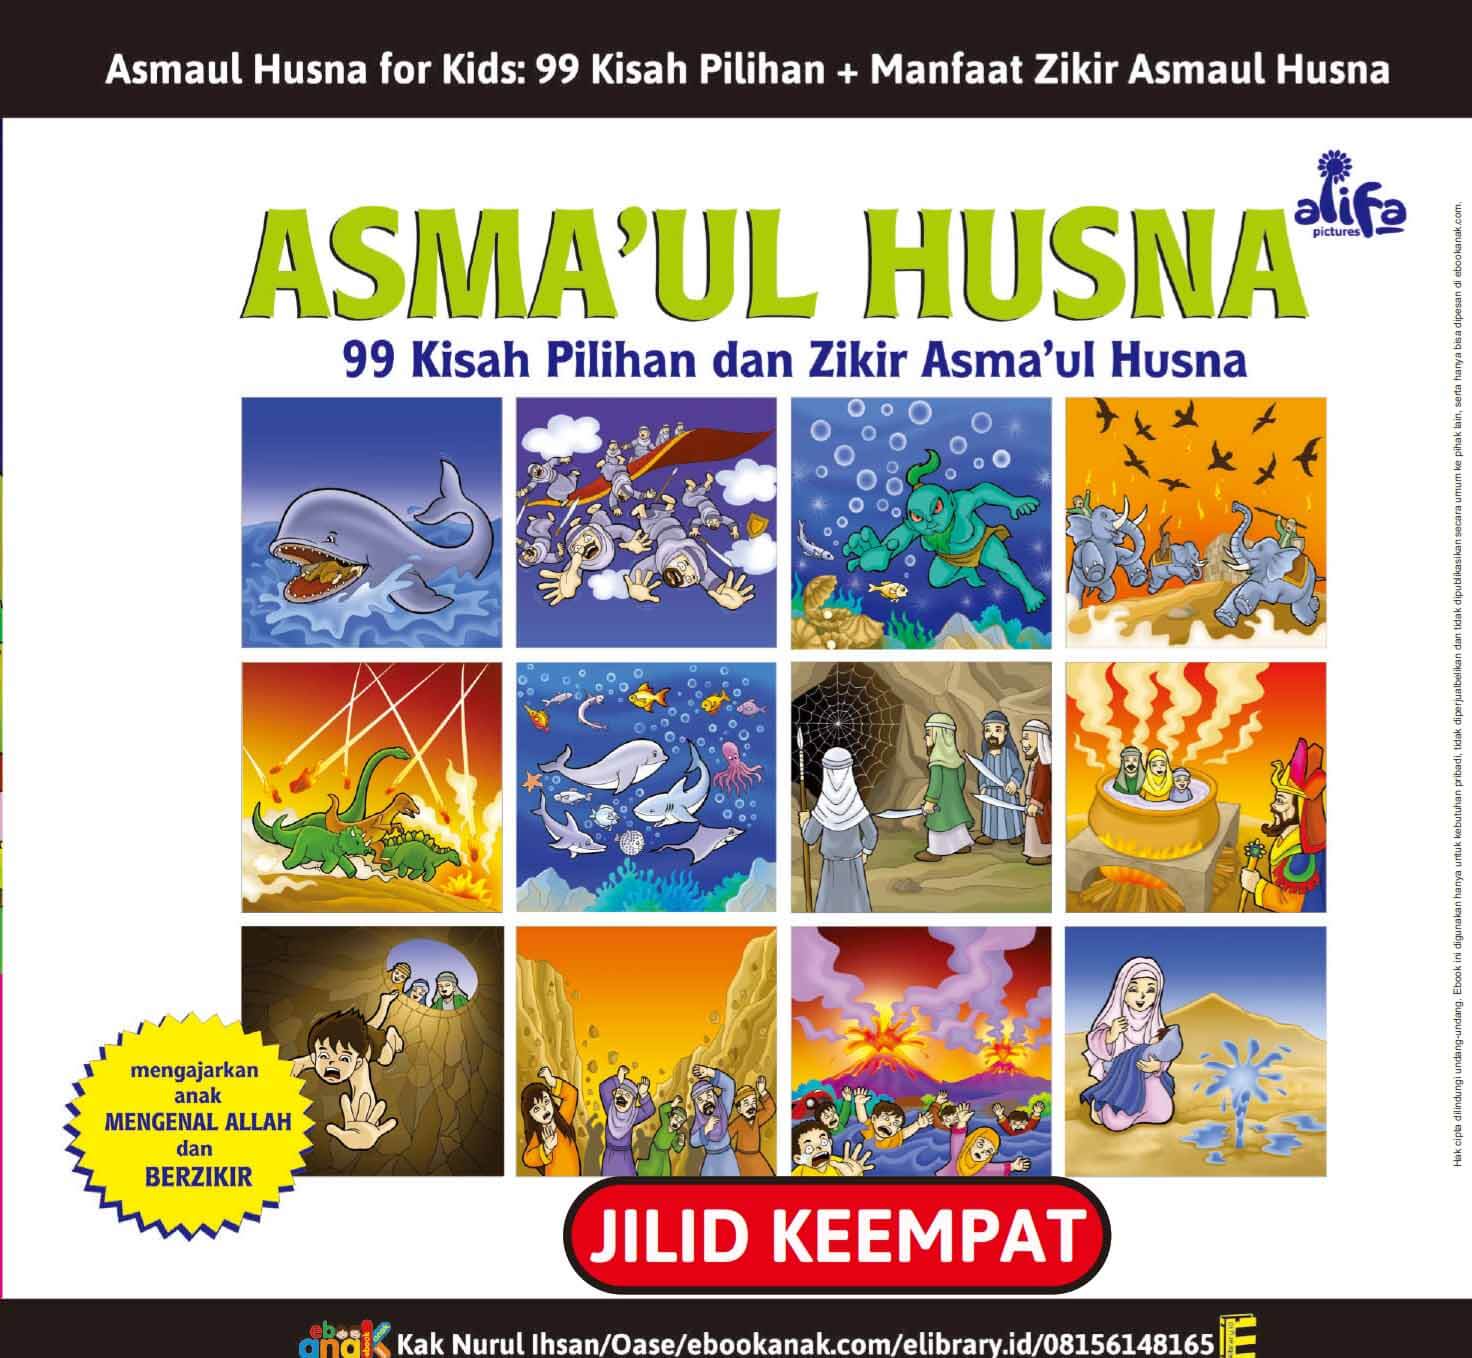 E051. Asmaul Husna for Kids; 99 Kisah Pilihan dan Manfaat Zikir Asmaul Husna; Jilid 4